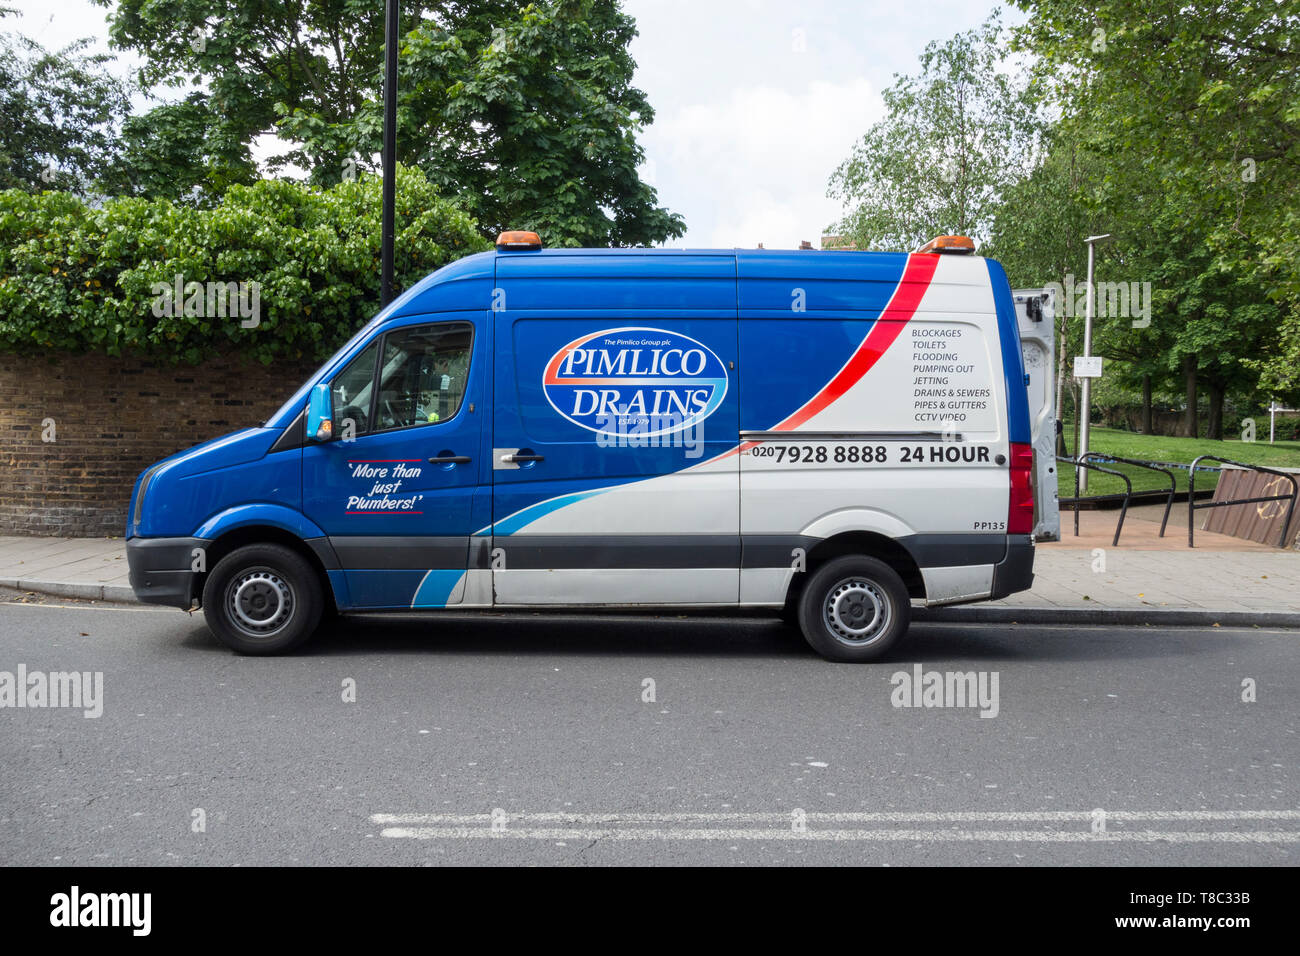 Pimlico Drains Klempner van geparkt auf einer Straße in London, England, Großbritannien Stockfoto